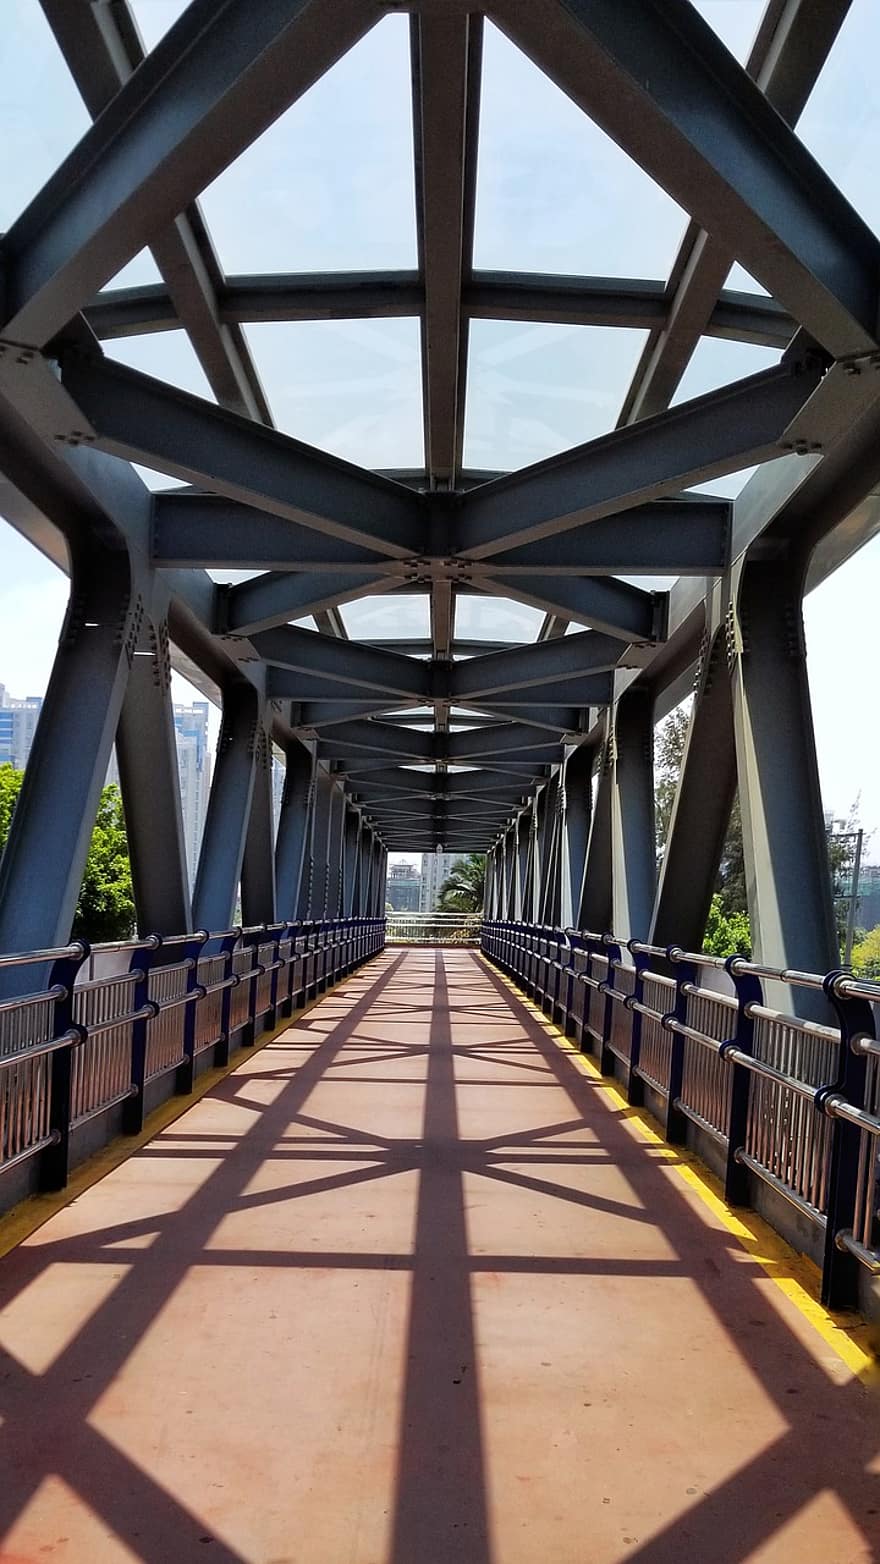 cầu đi bộ, cầu, kết cấu, cầu cho người đi bộ, Cầu vượt cho người đi bộ, thành phố, thành thị